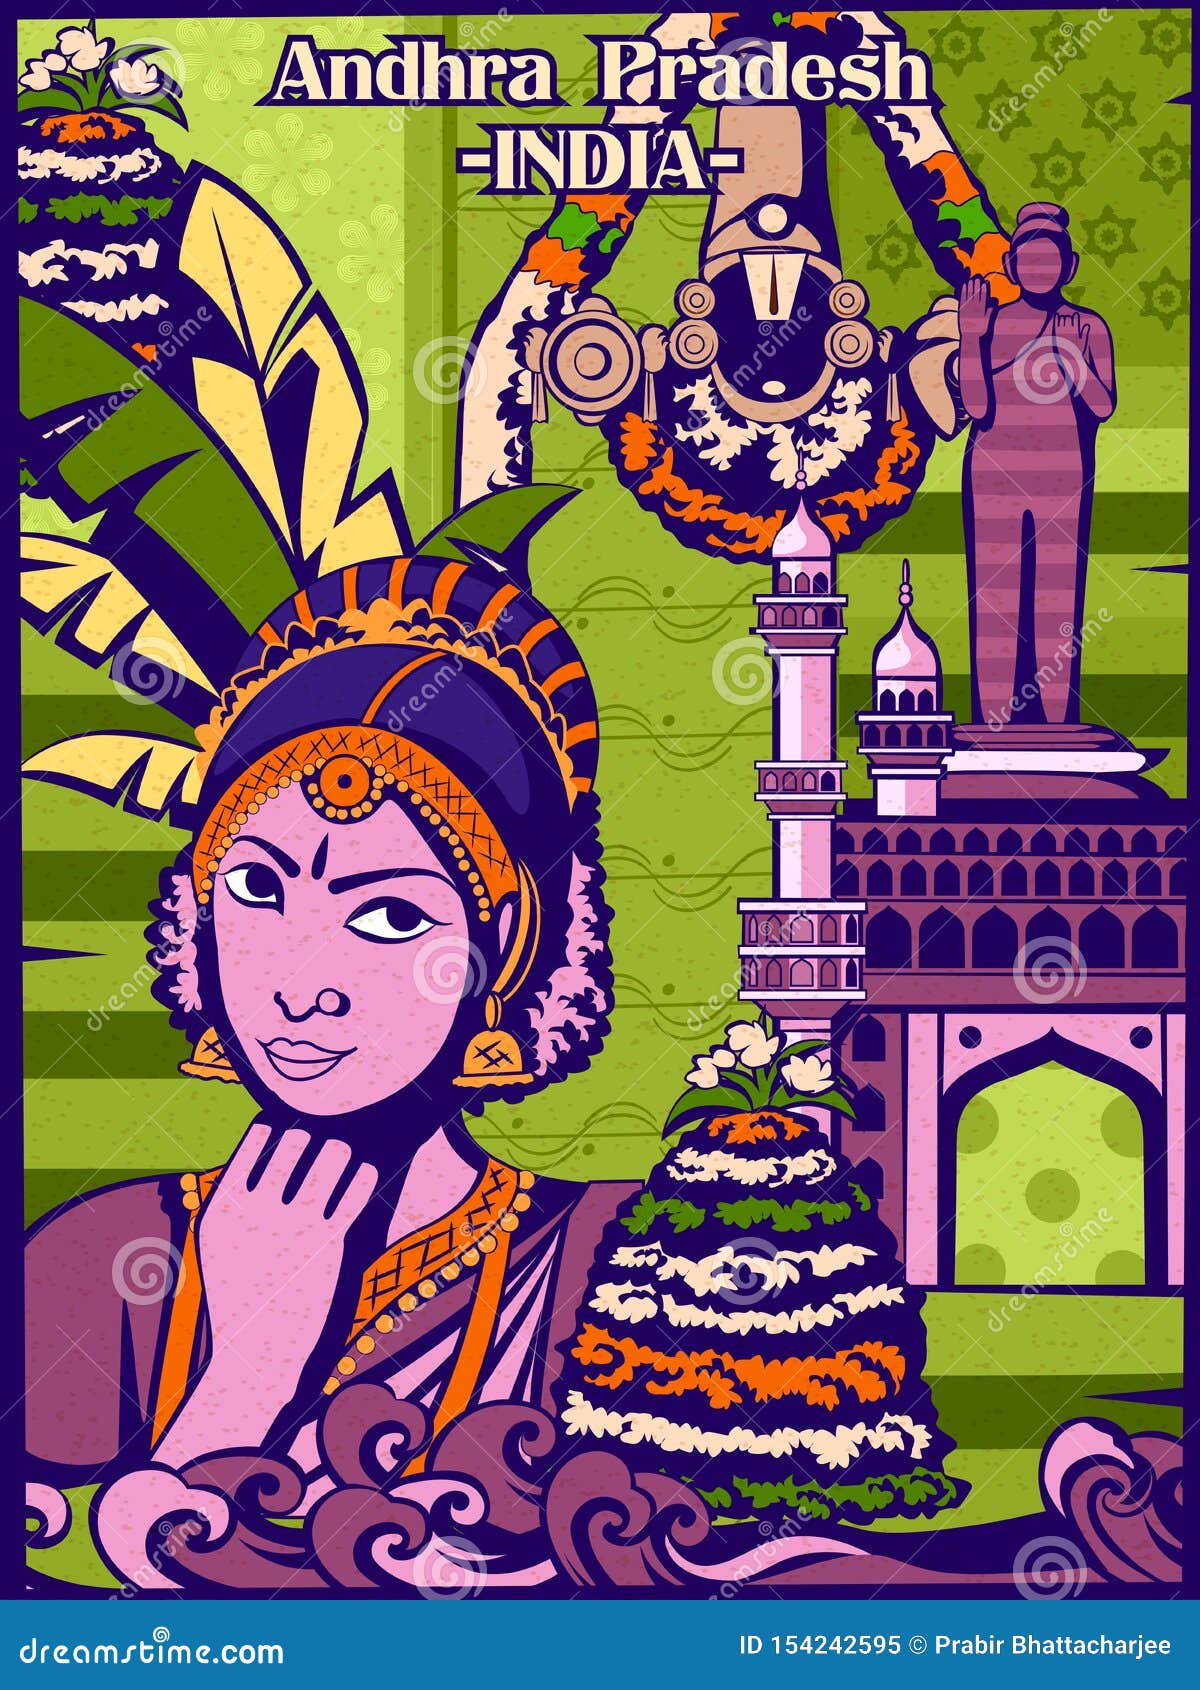 colorful cultural display of state andhra pradesh in india